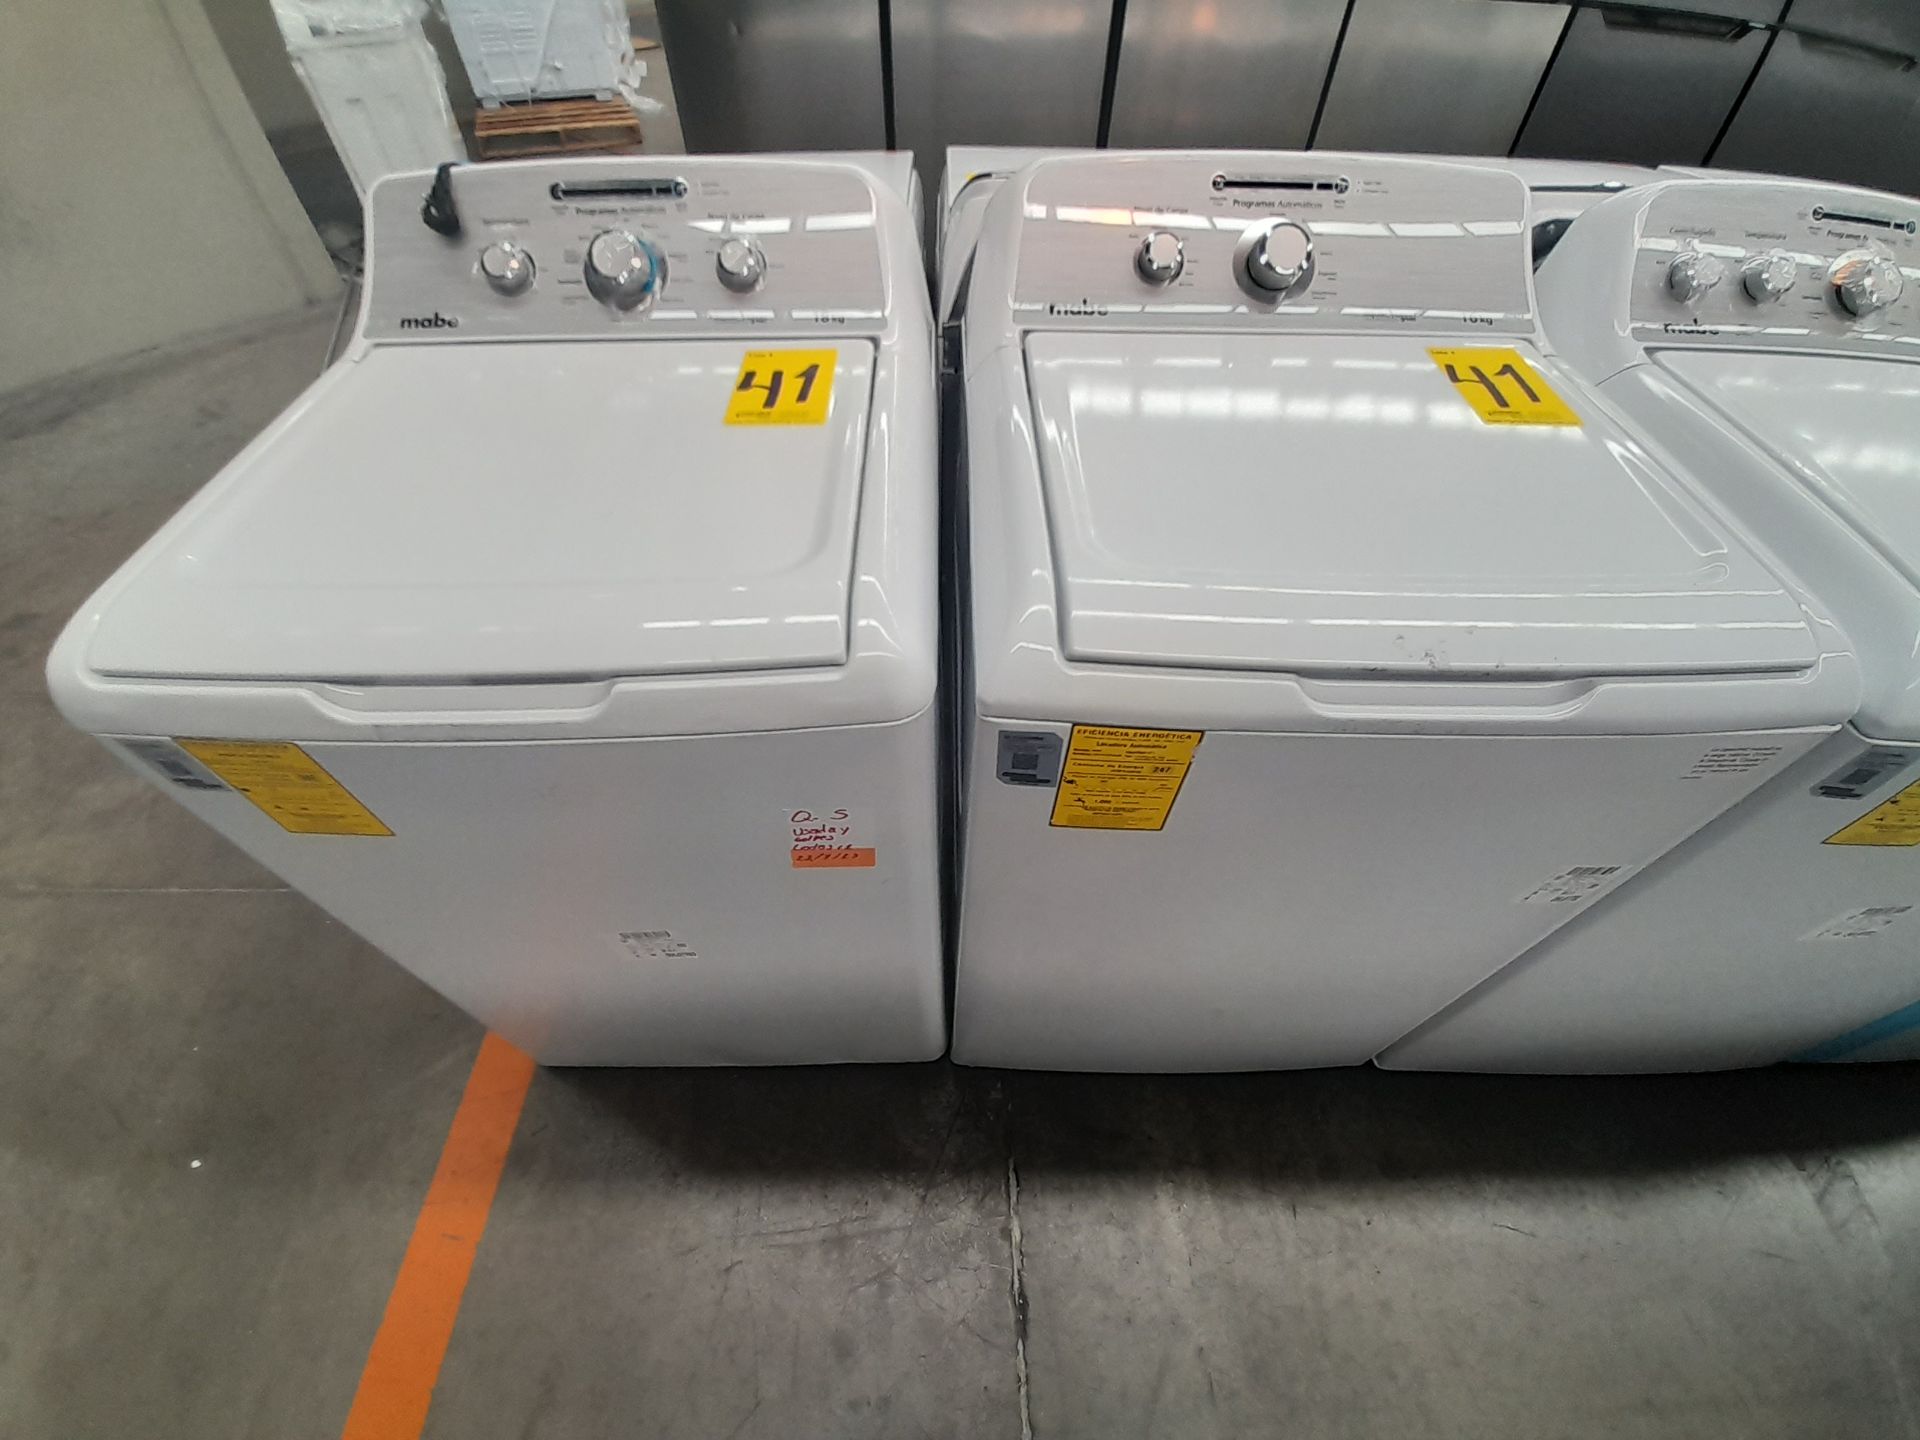 Lote de 2 lavadoras contiene: 1 lavadora de 18 KG, Marca MABE, Modelo LMA78113CBAB01, Serie S76416,